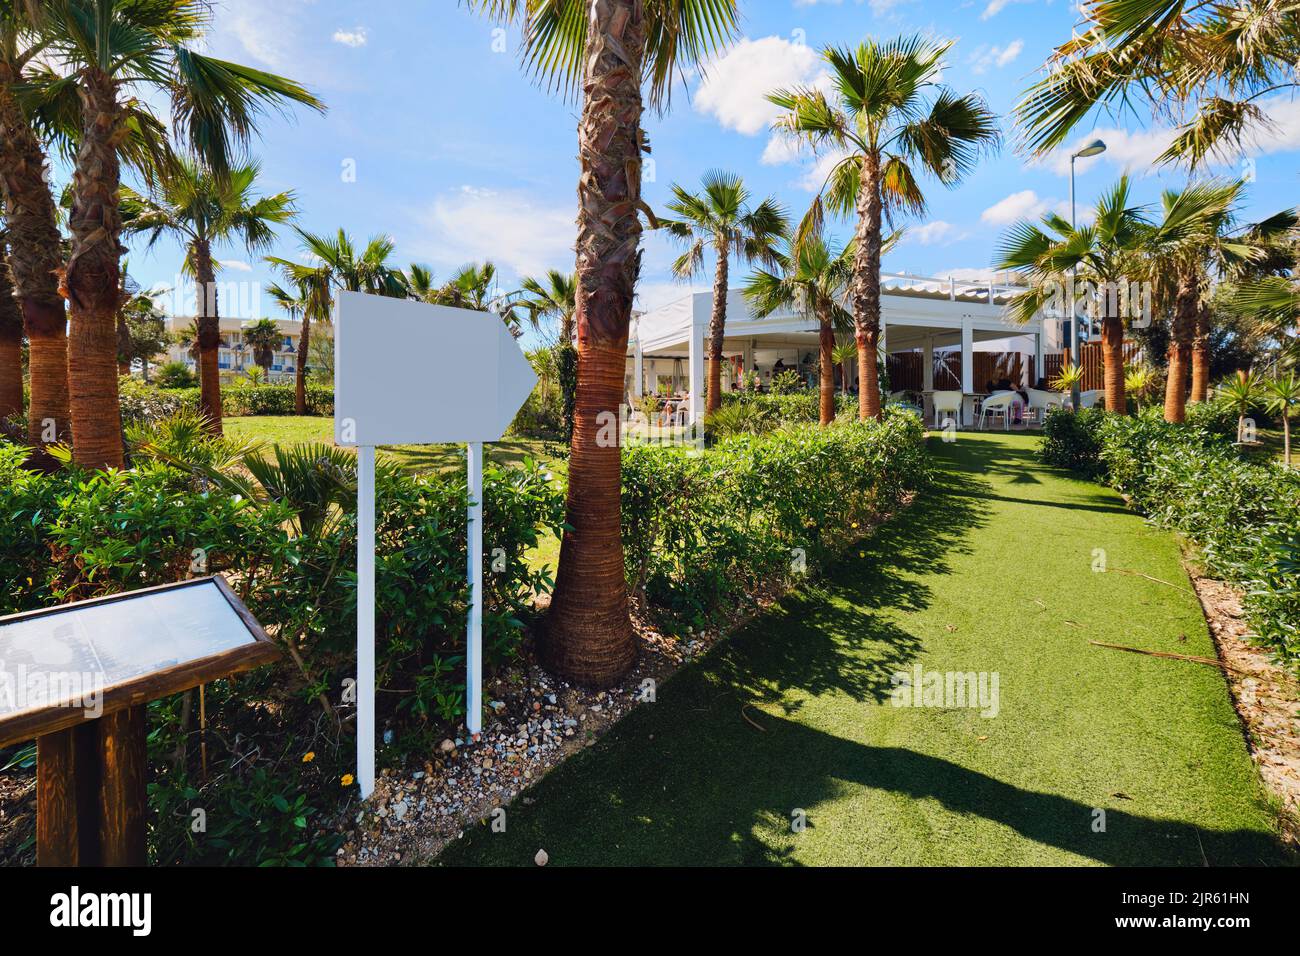 Entrée bordée de palmiers au restaurant tropical sur la plage pendant une journée ensoleillée d'été. Province d'Alicante, Costa Blanca, Espagne. Voyage, vacances, su Banque D'Images